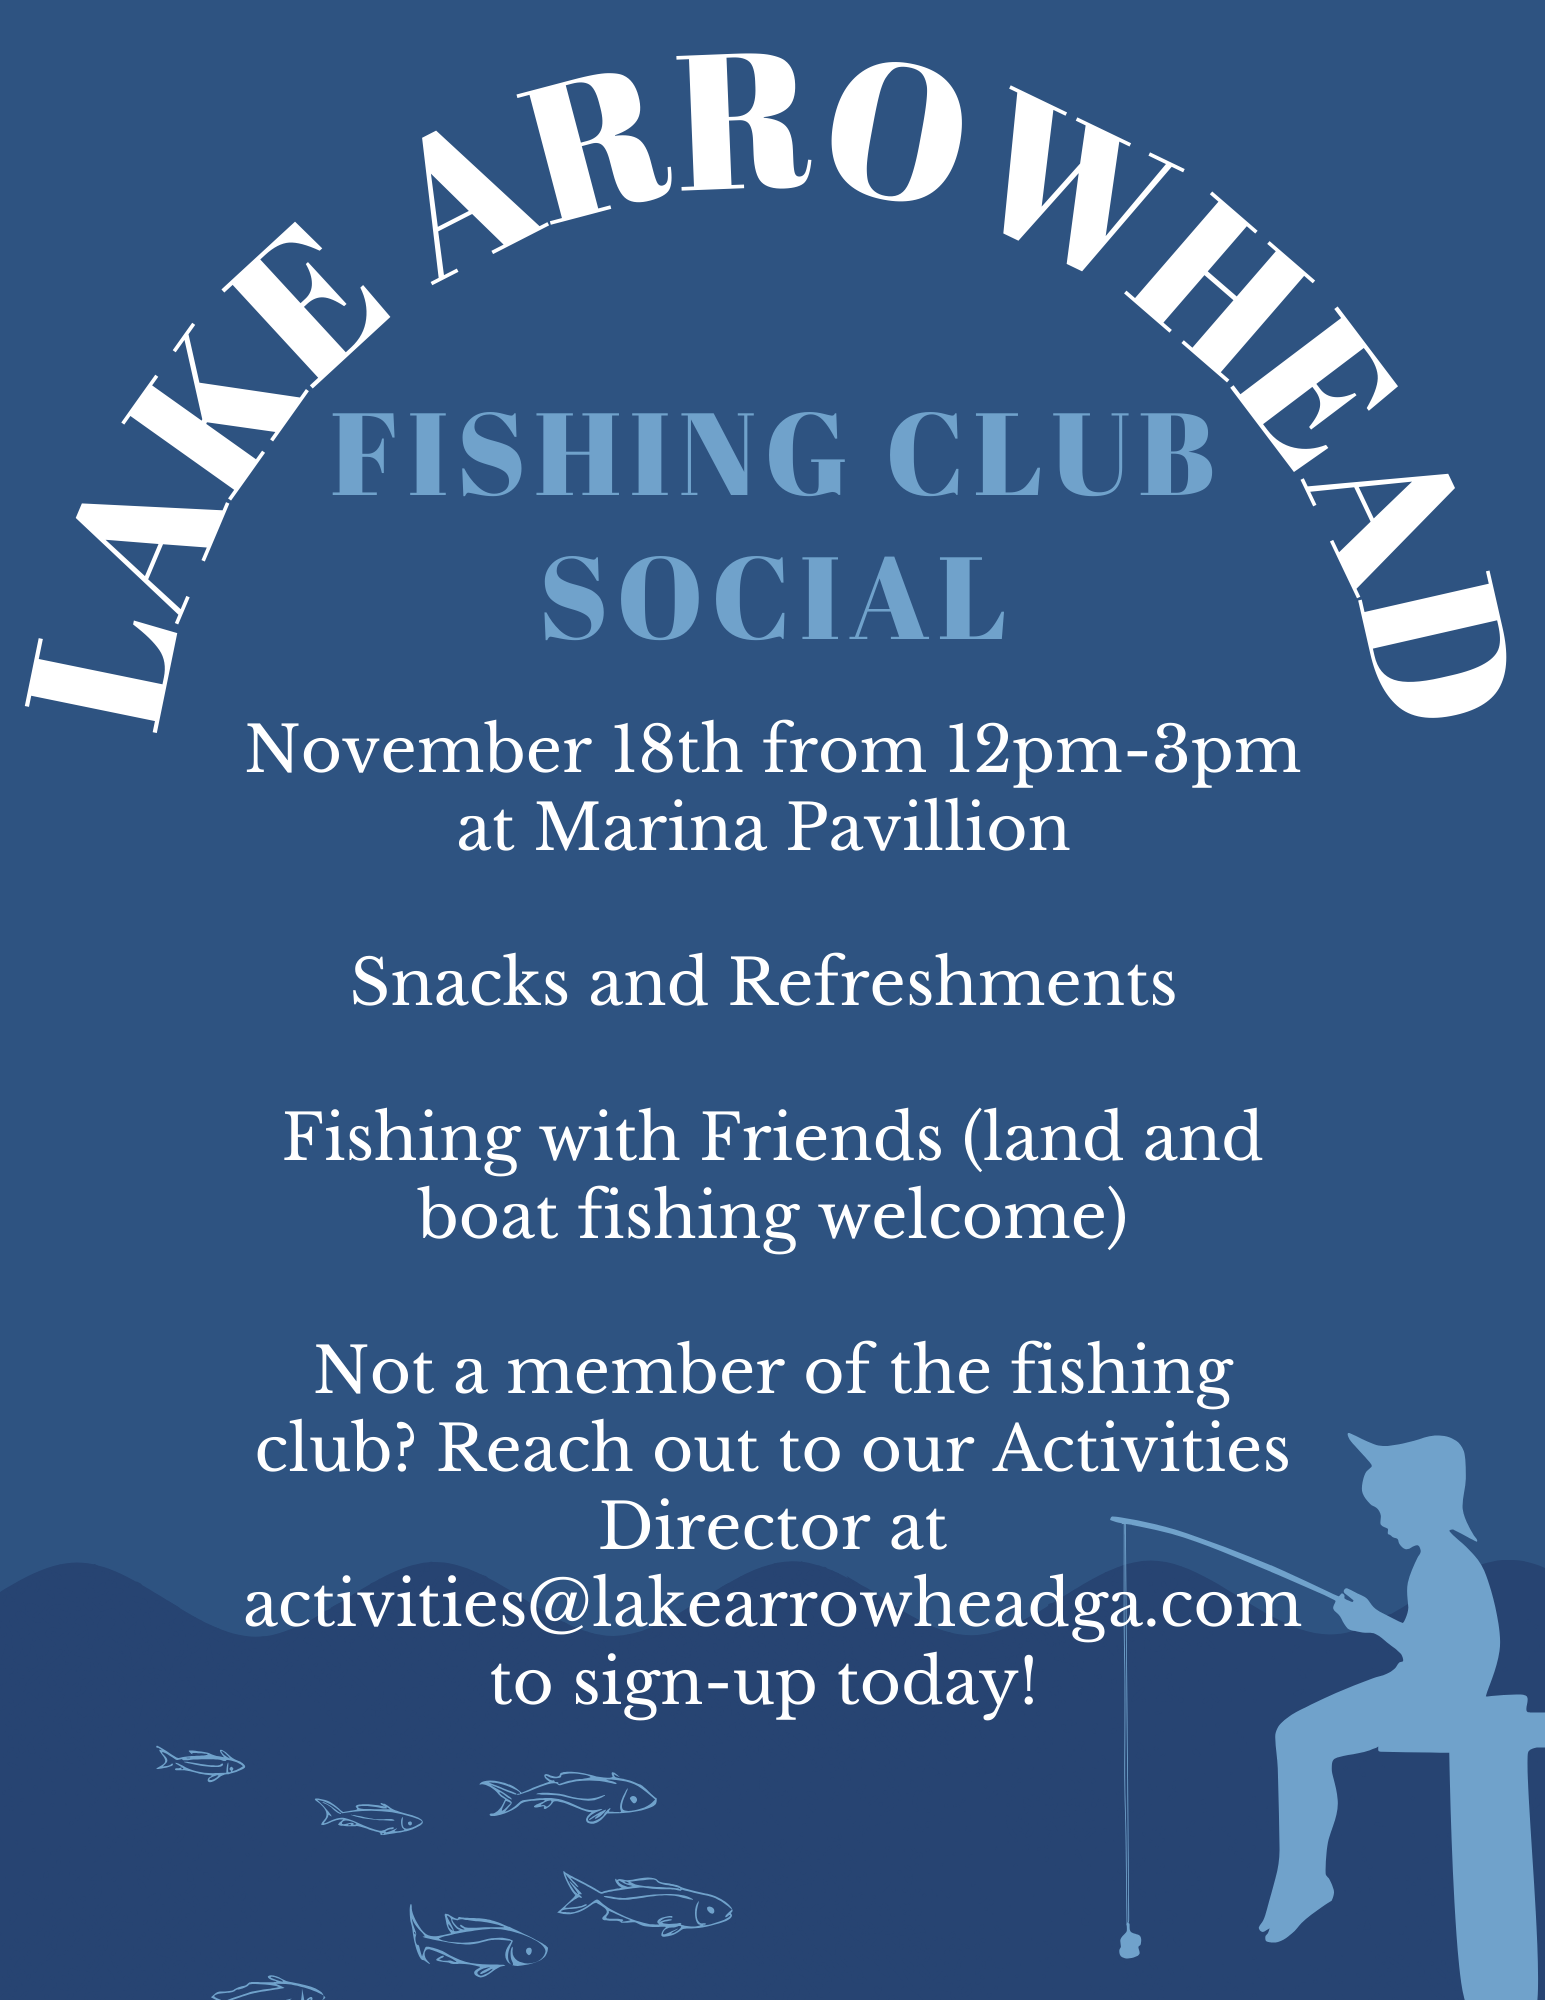 Fishing Club Social November 18th 